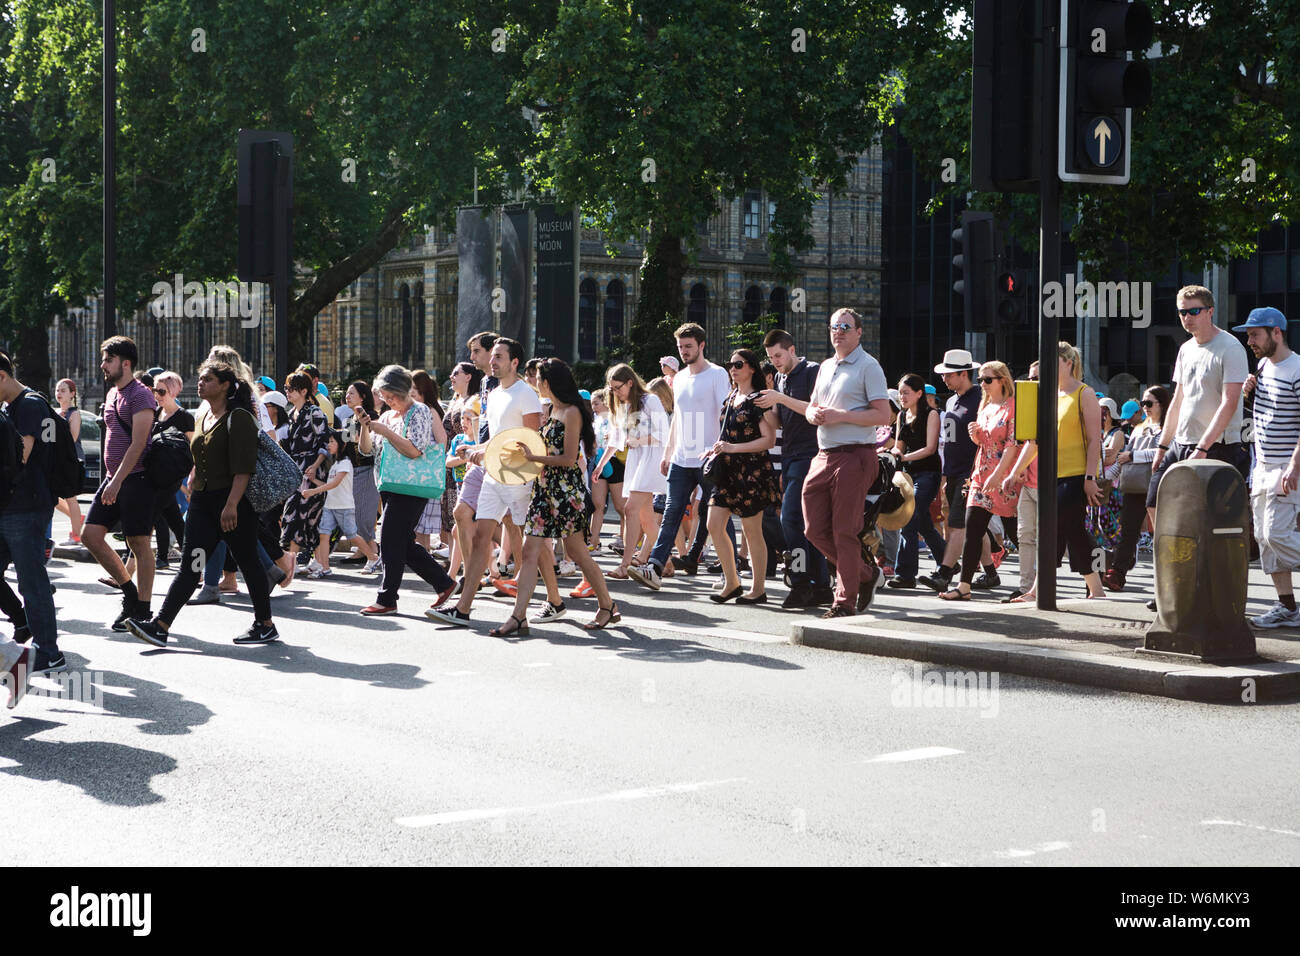 Personnes traversant la route, avec Natural History Museum en arrière-plan, South Kensington, Londres, SW7. La race humaine. Pensions. Assurance vie. Contagion. Banque D'Images